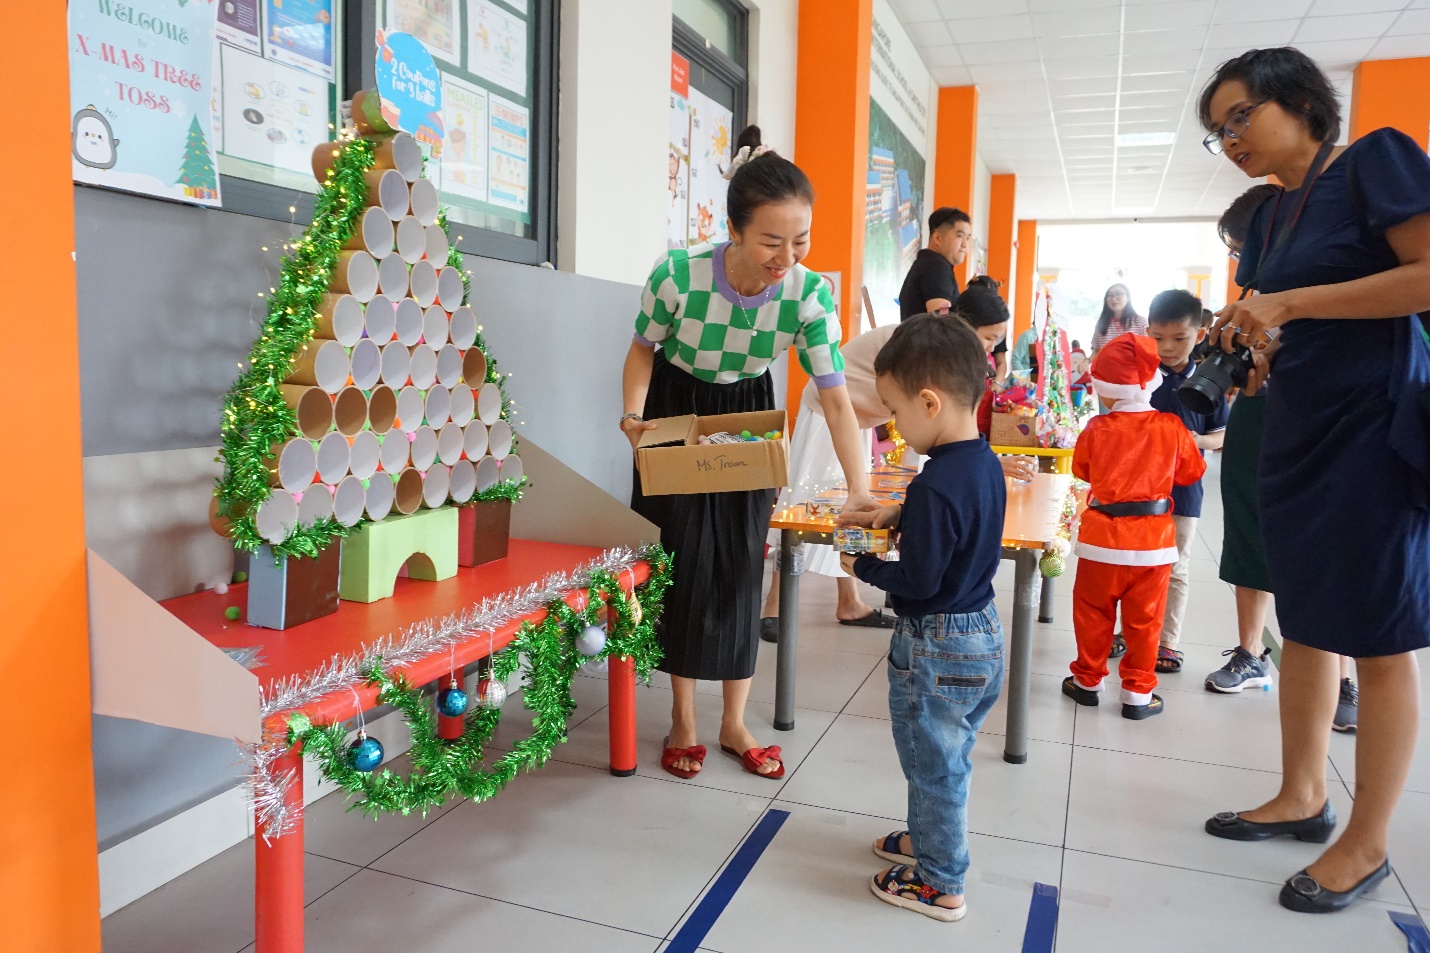 Giáng sinh kết nối, niềm vui nhân đôi tại hội chợ từ thiện của hệ thống Trường Quốc tế Singapore - Ảnh 5.